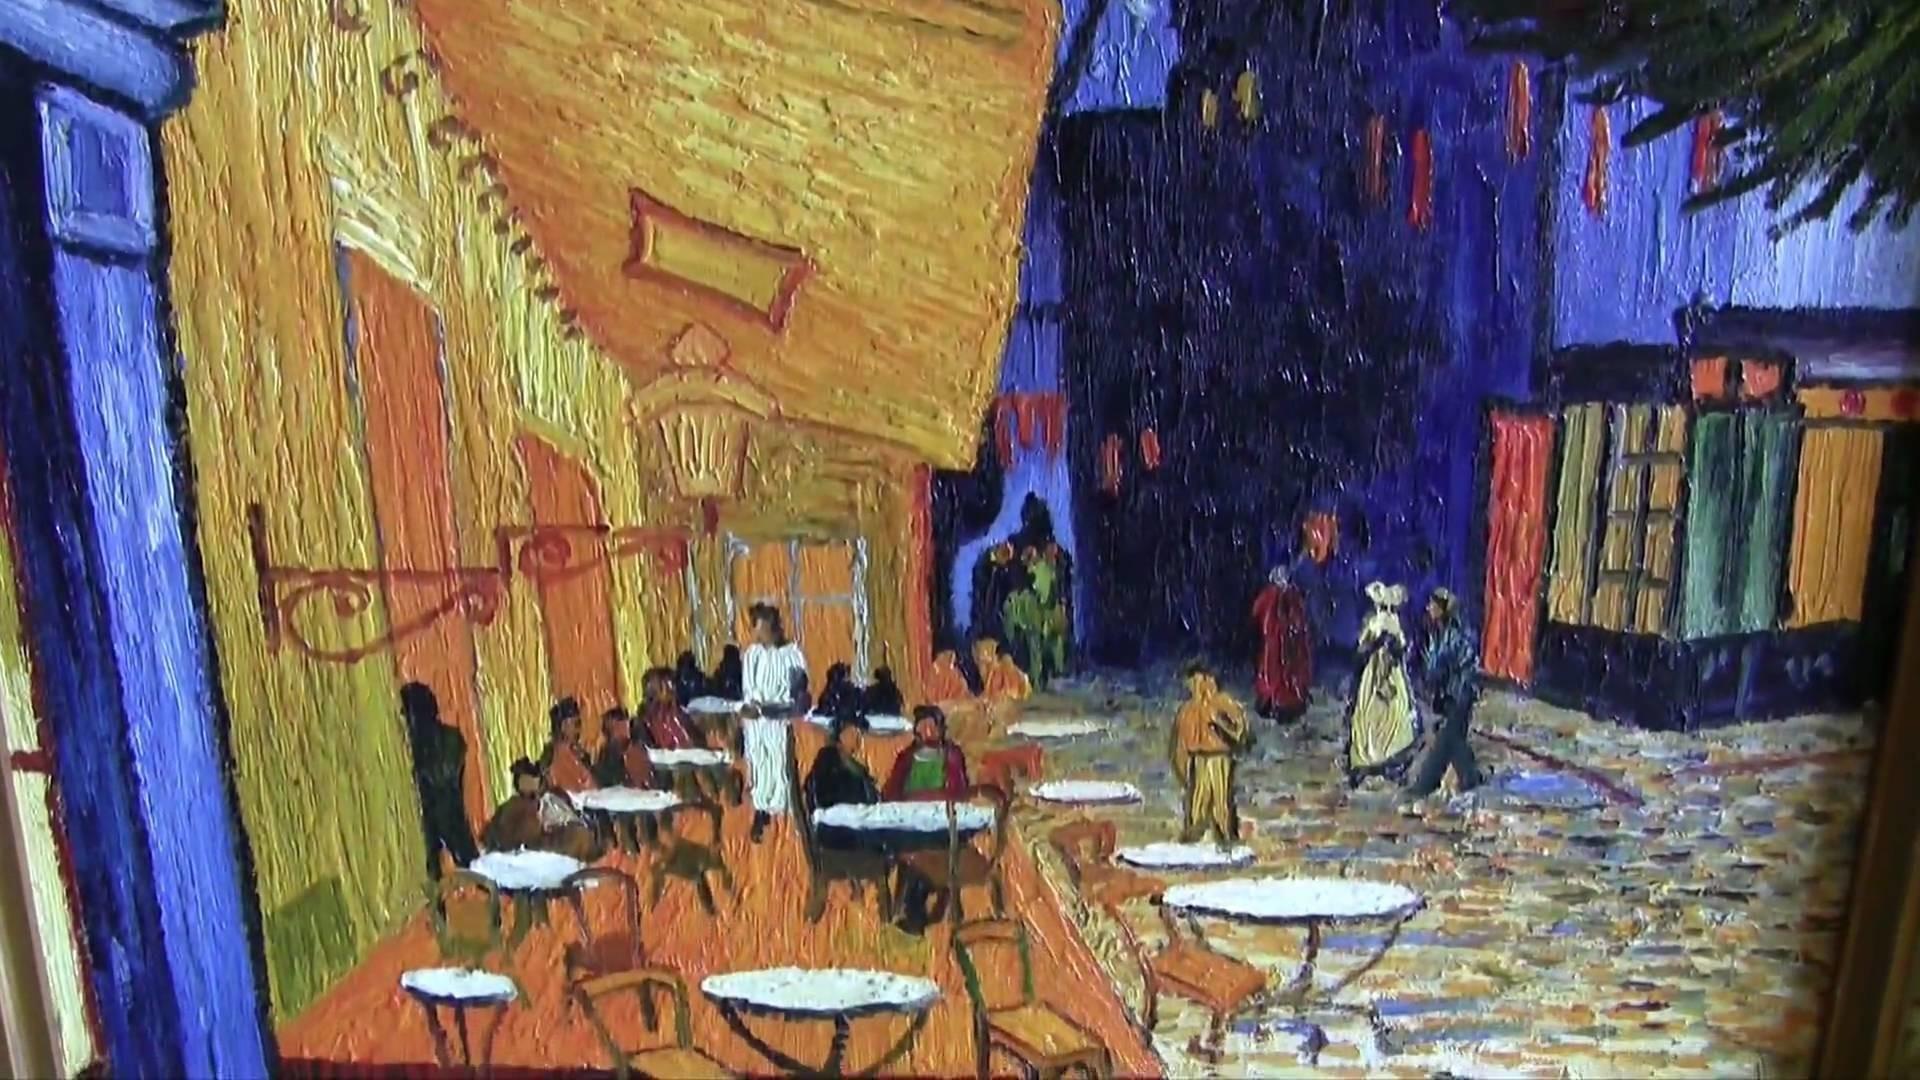 Van Gogh Paintings Pc Wallpapers - Top Free Van Gogh Paintings Pc